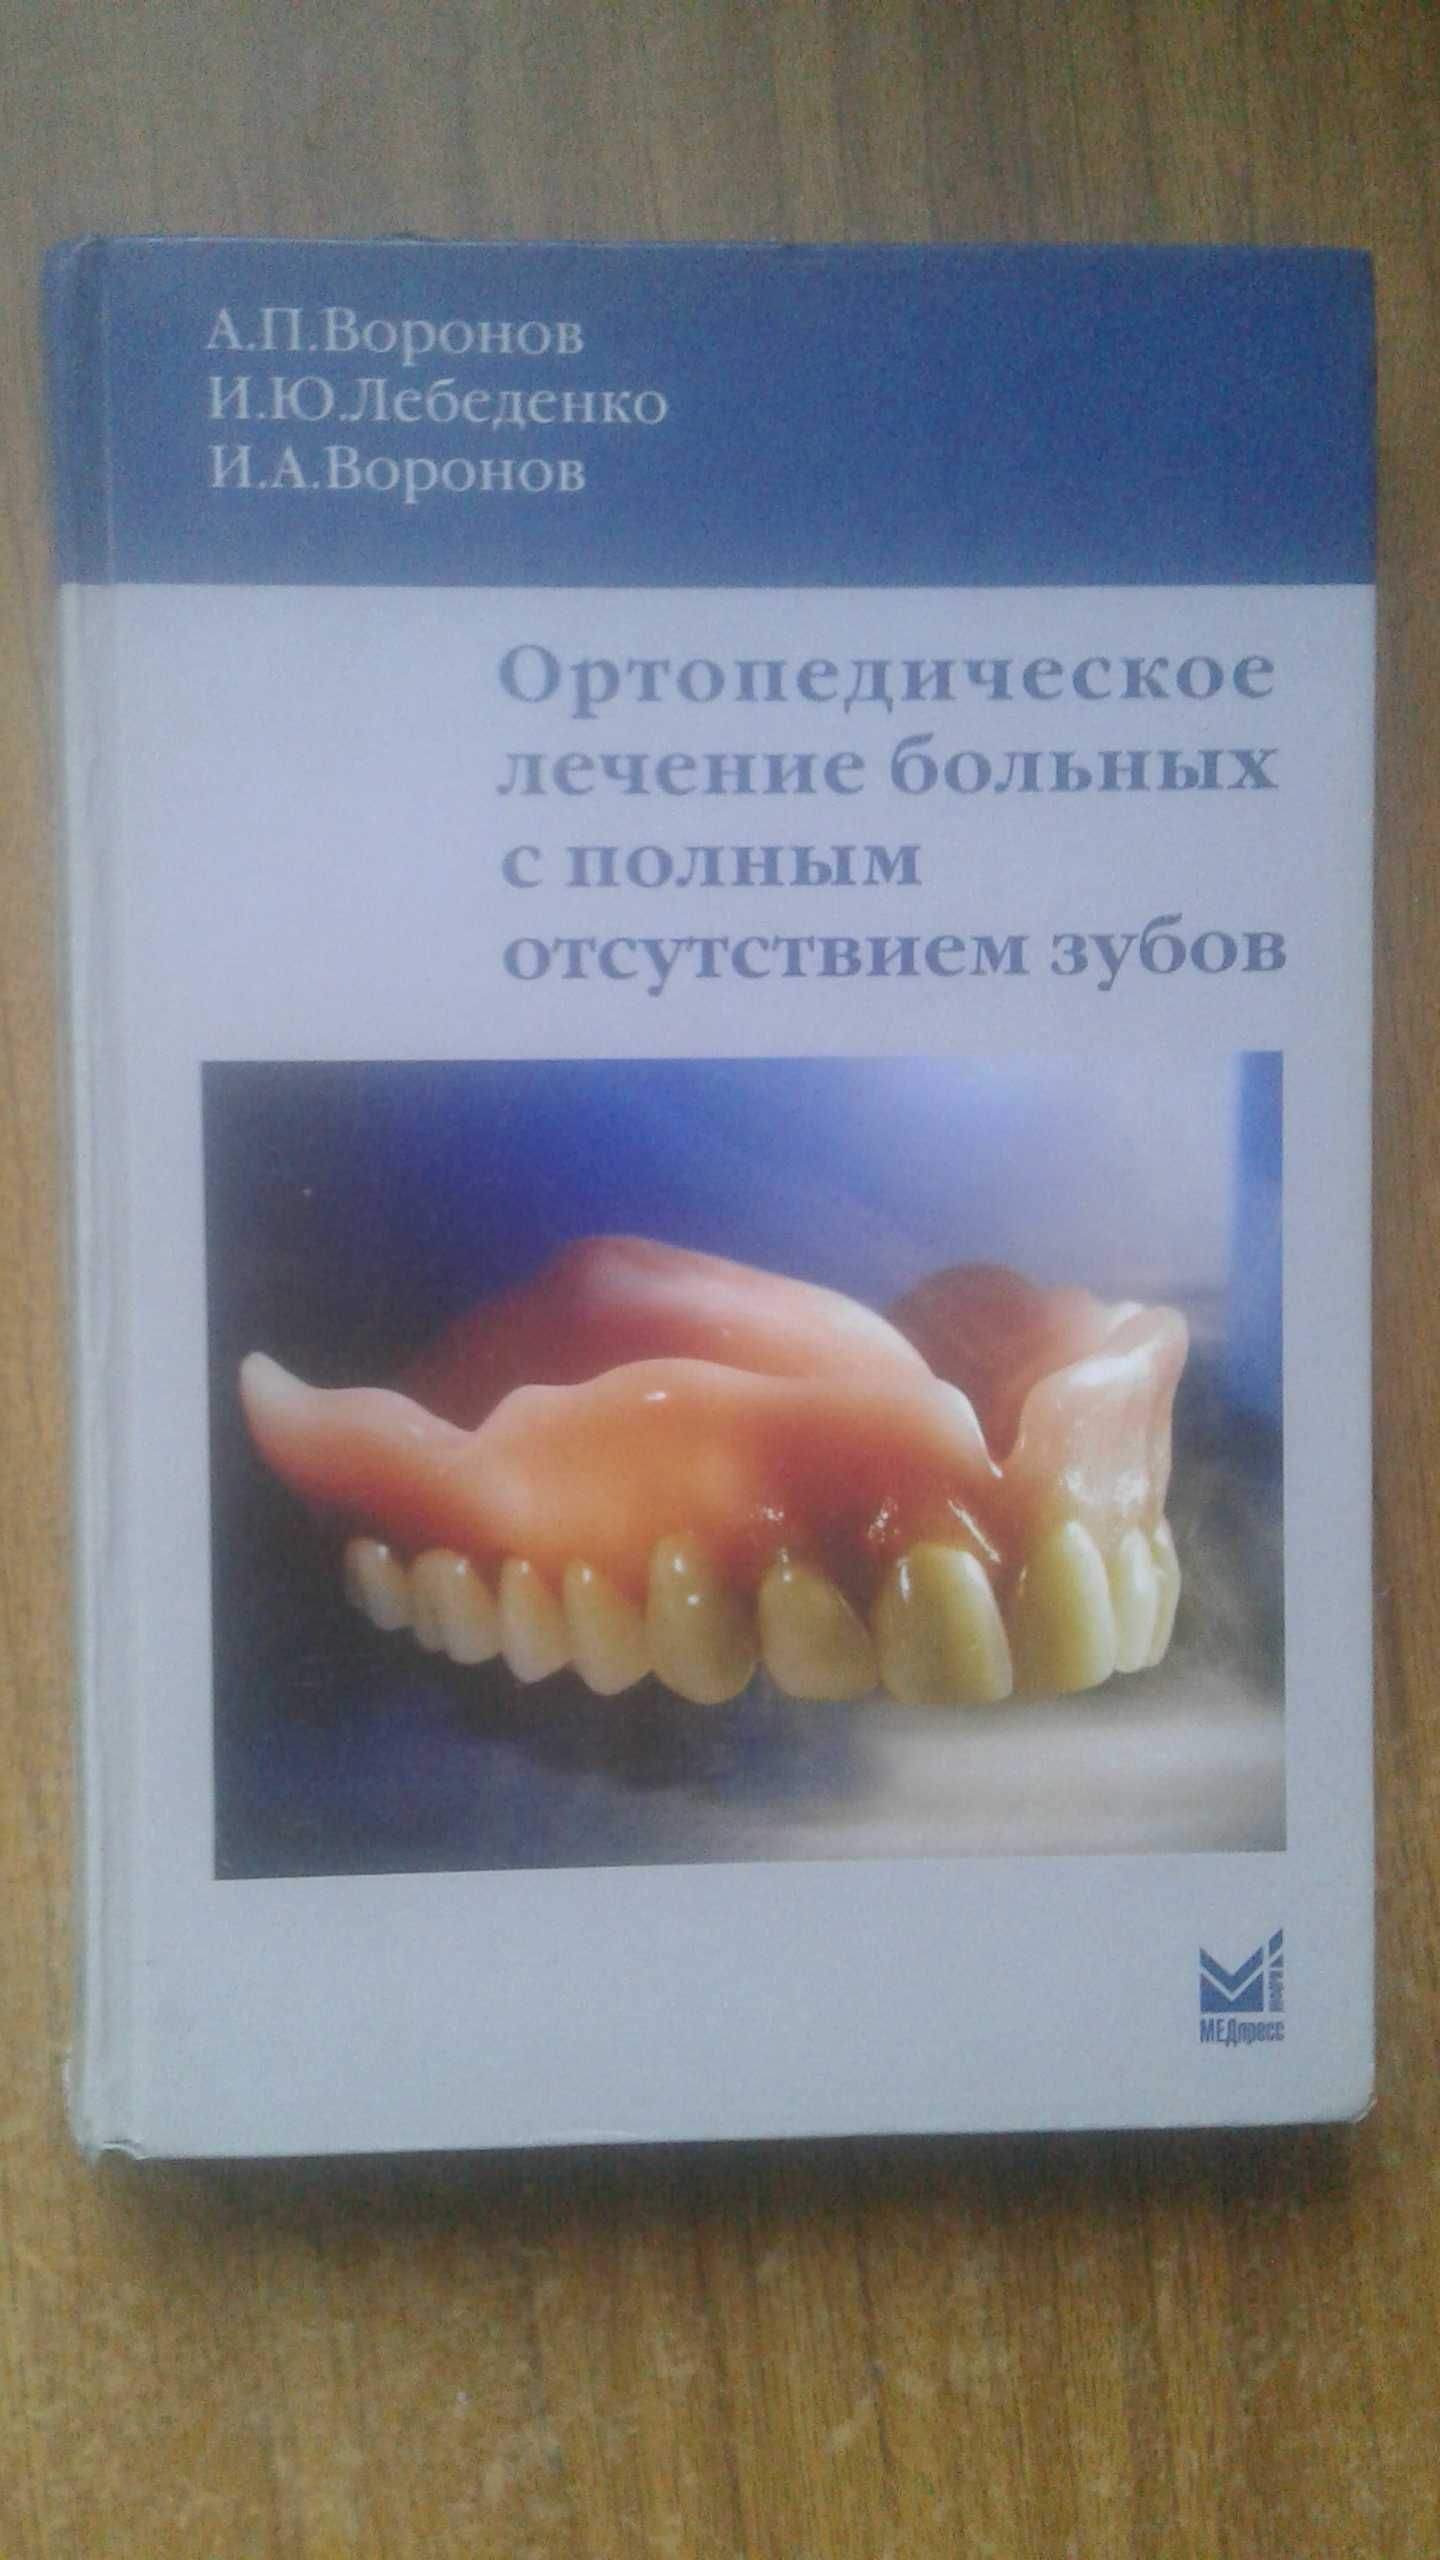 Ортопедическое лечение больных с полным отсутствием зубов 2009 год